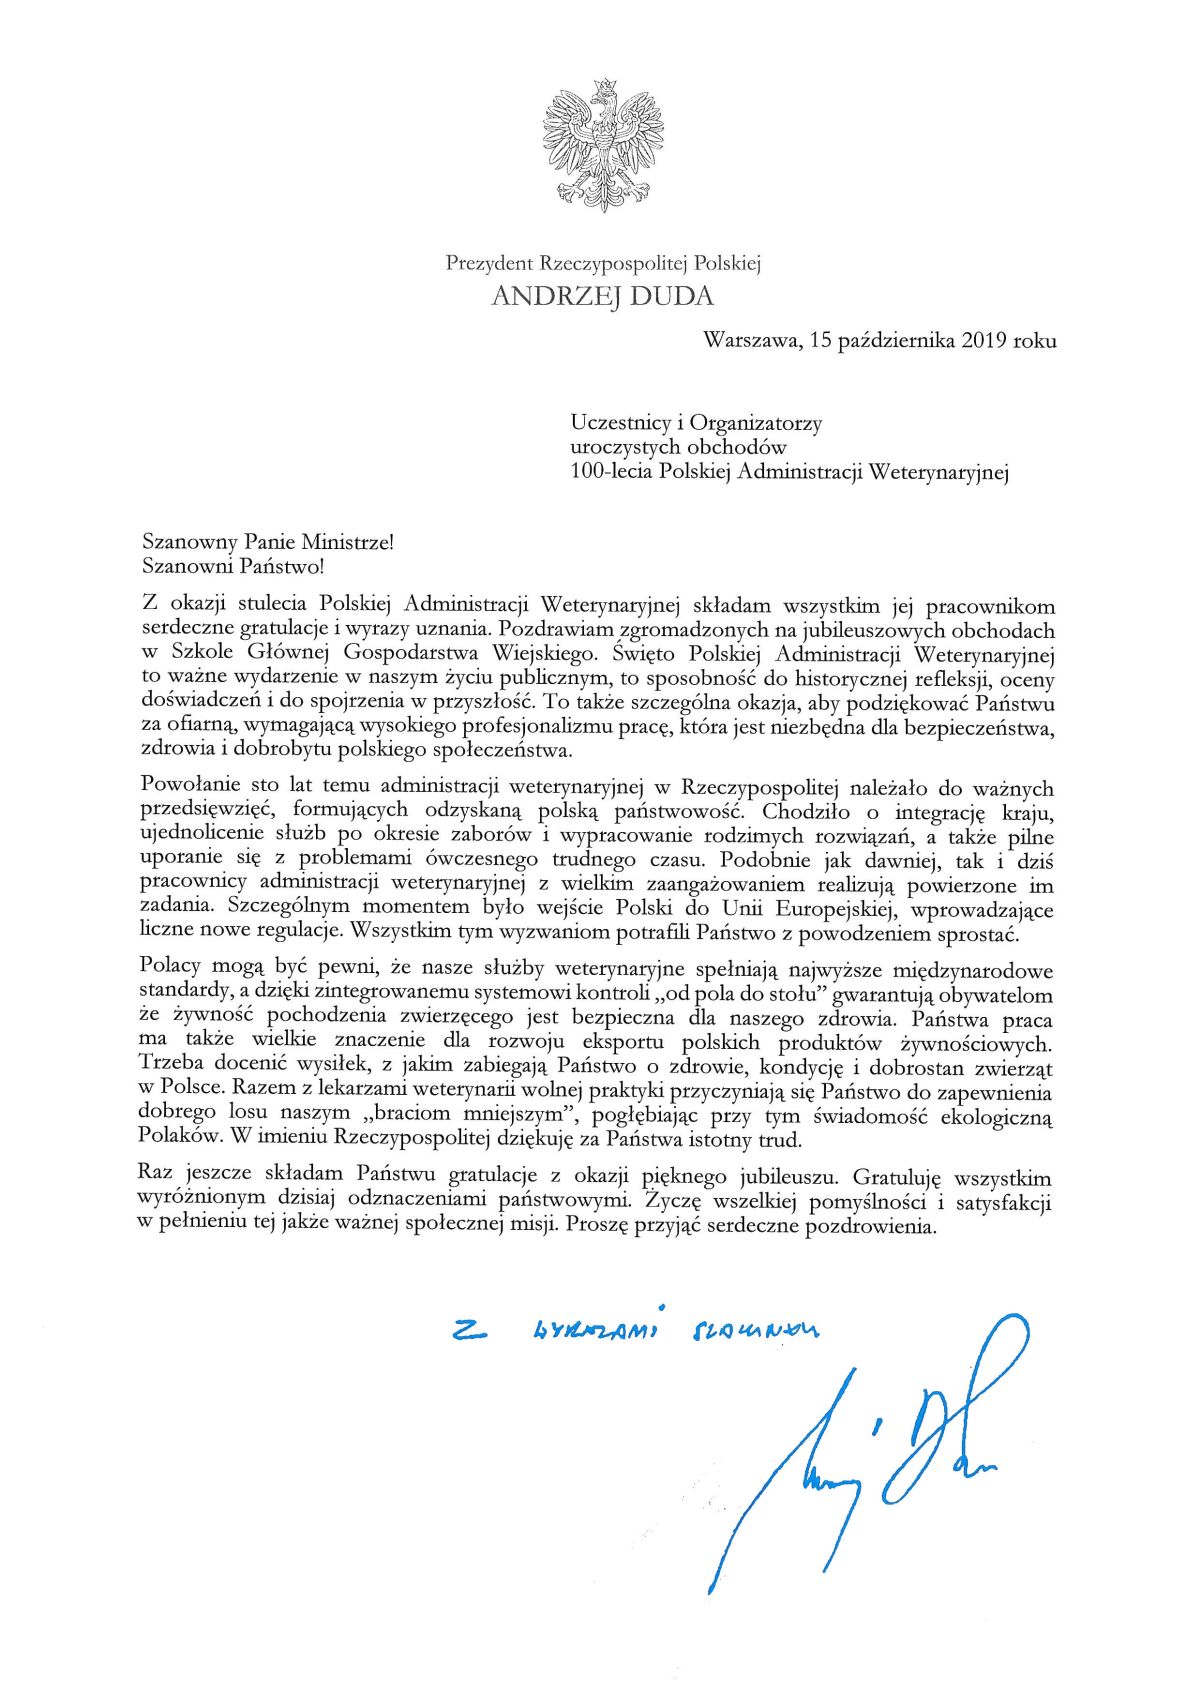 List Prezydenta RP Andrzeja Dudy do uczestników i organizatorów obchodów 100-lecia